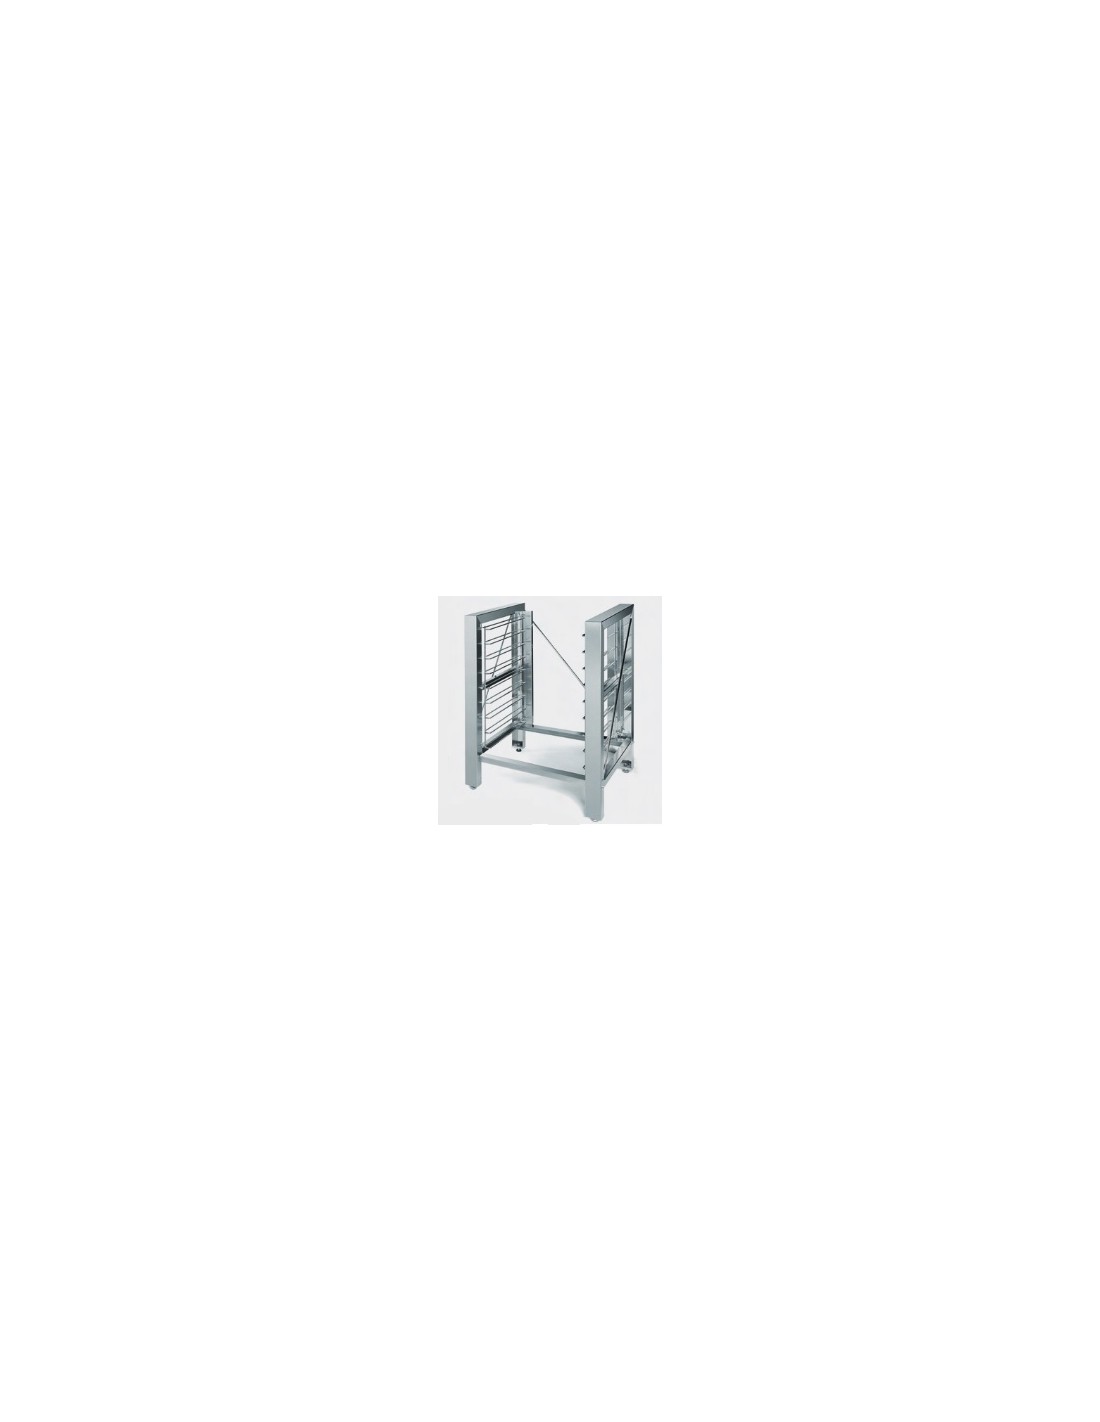 Mesa de acero inoxidable + puerta h 87 cm - Capacidad n. 9 cacerolas